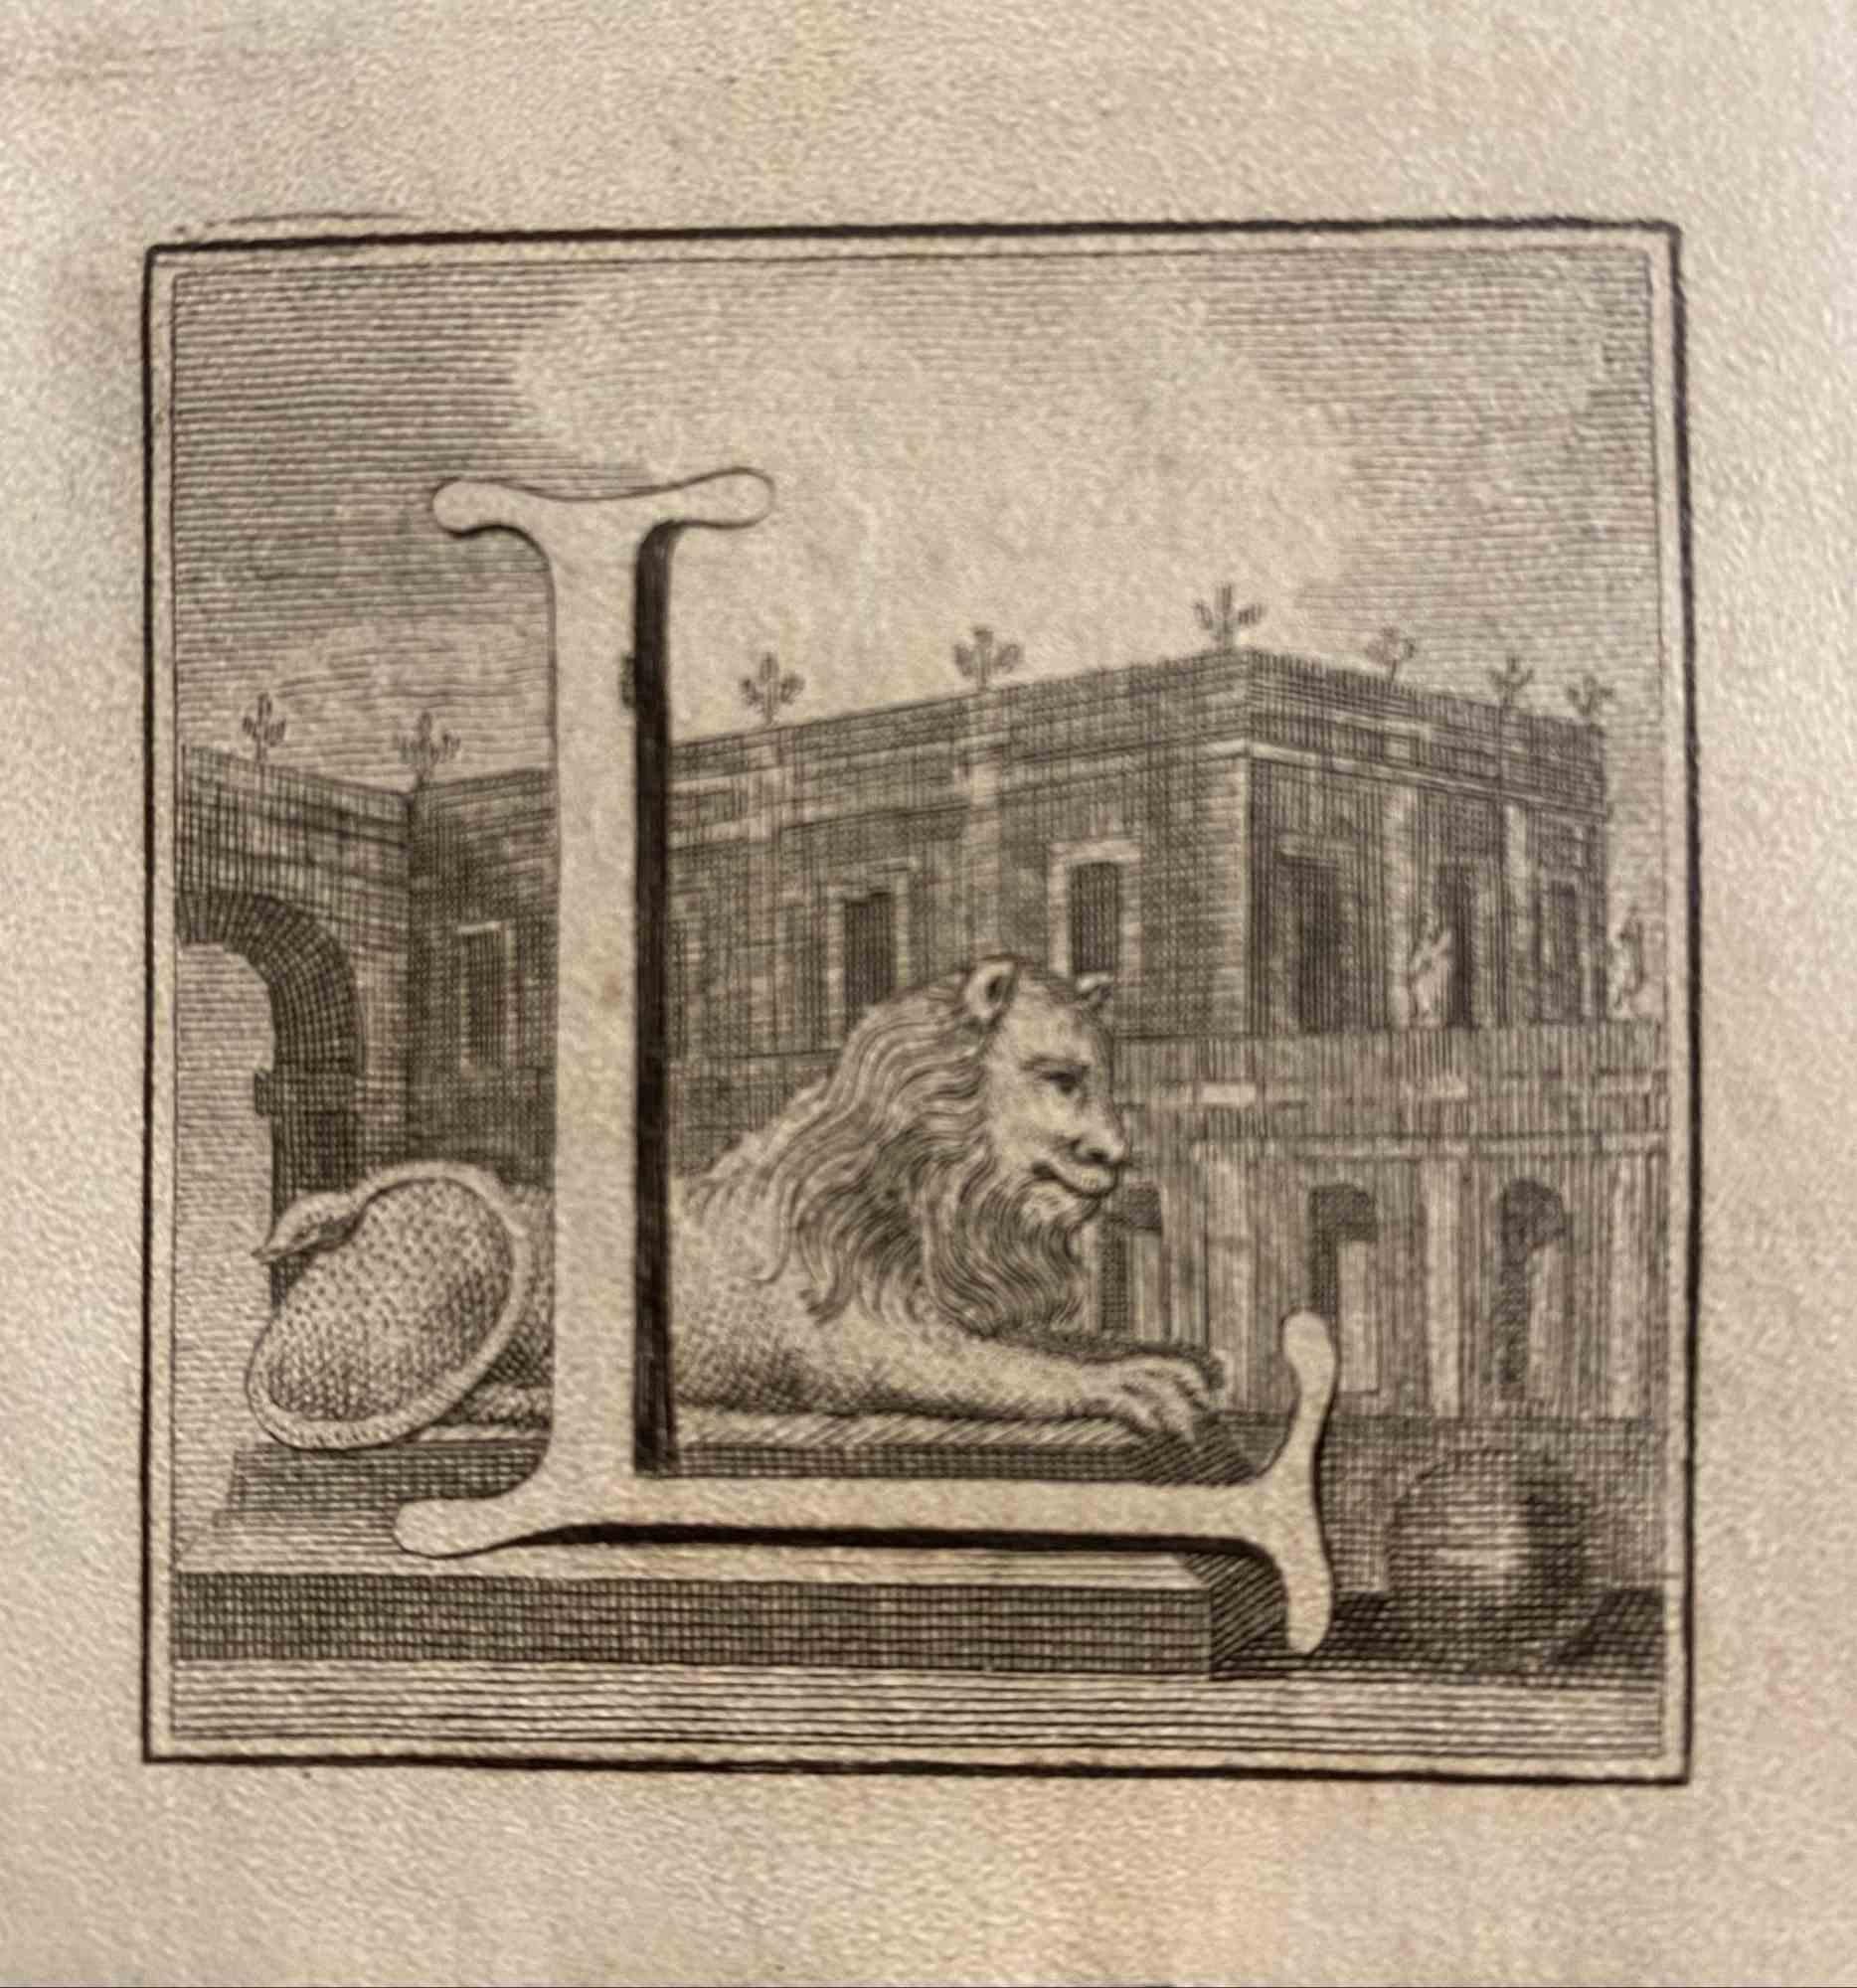 Buchstabe des Alphabets L aus der Serie "Antiquitäten von Herculaneum", ist eine Radierung auf Papier, die von Luigi Vanvitelli im 18.

Guter Zustand mit einigen Stockflecken.

Die Radierung gehört zu der Druckserie "Antiquities of Herculaneum